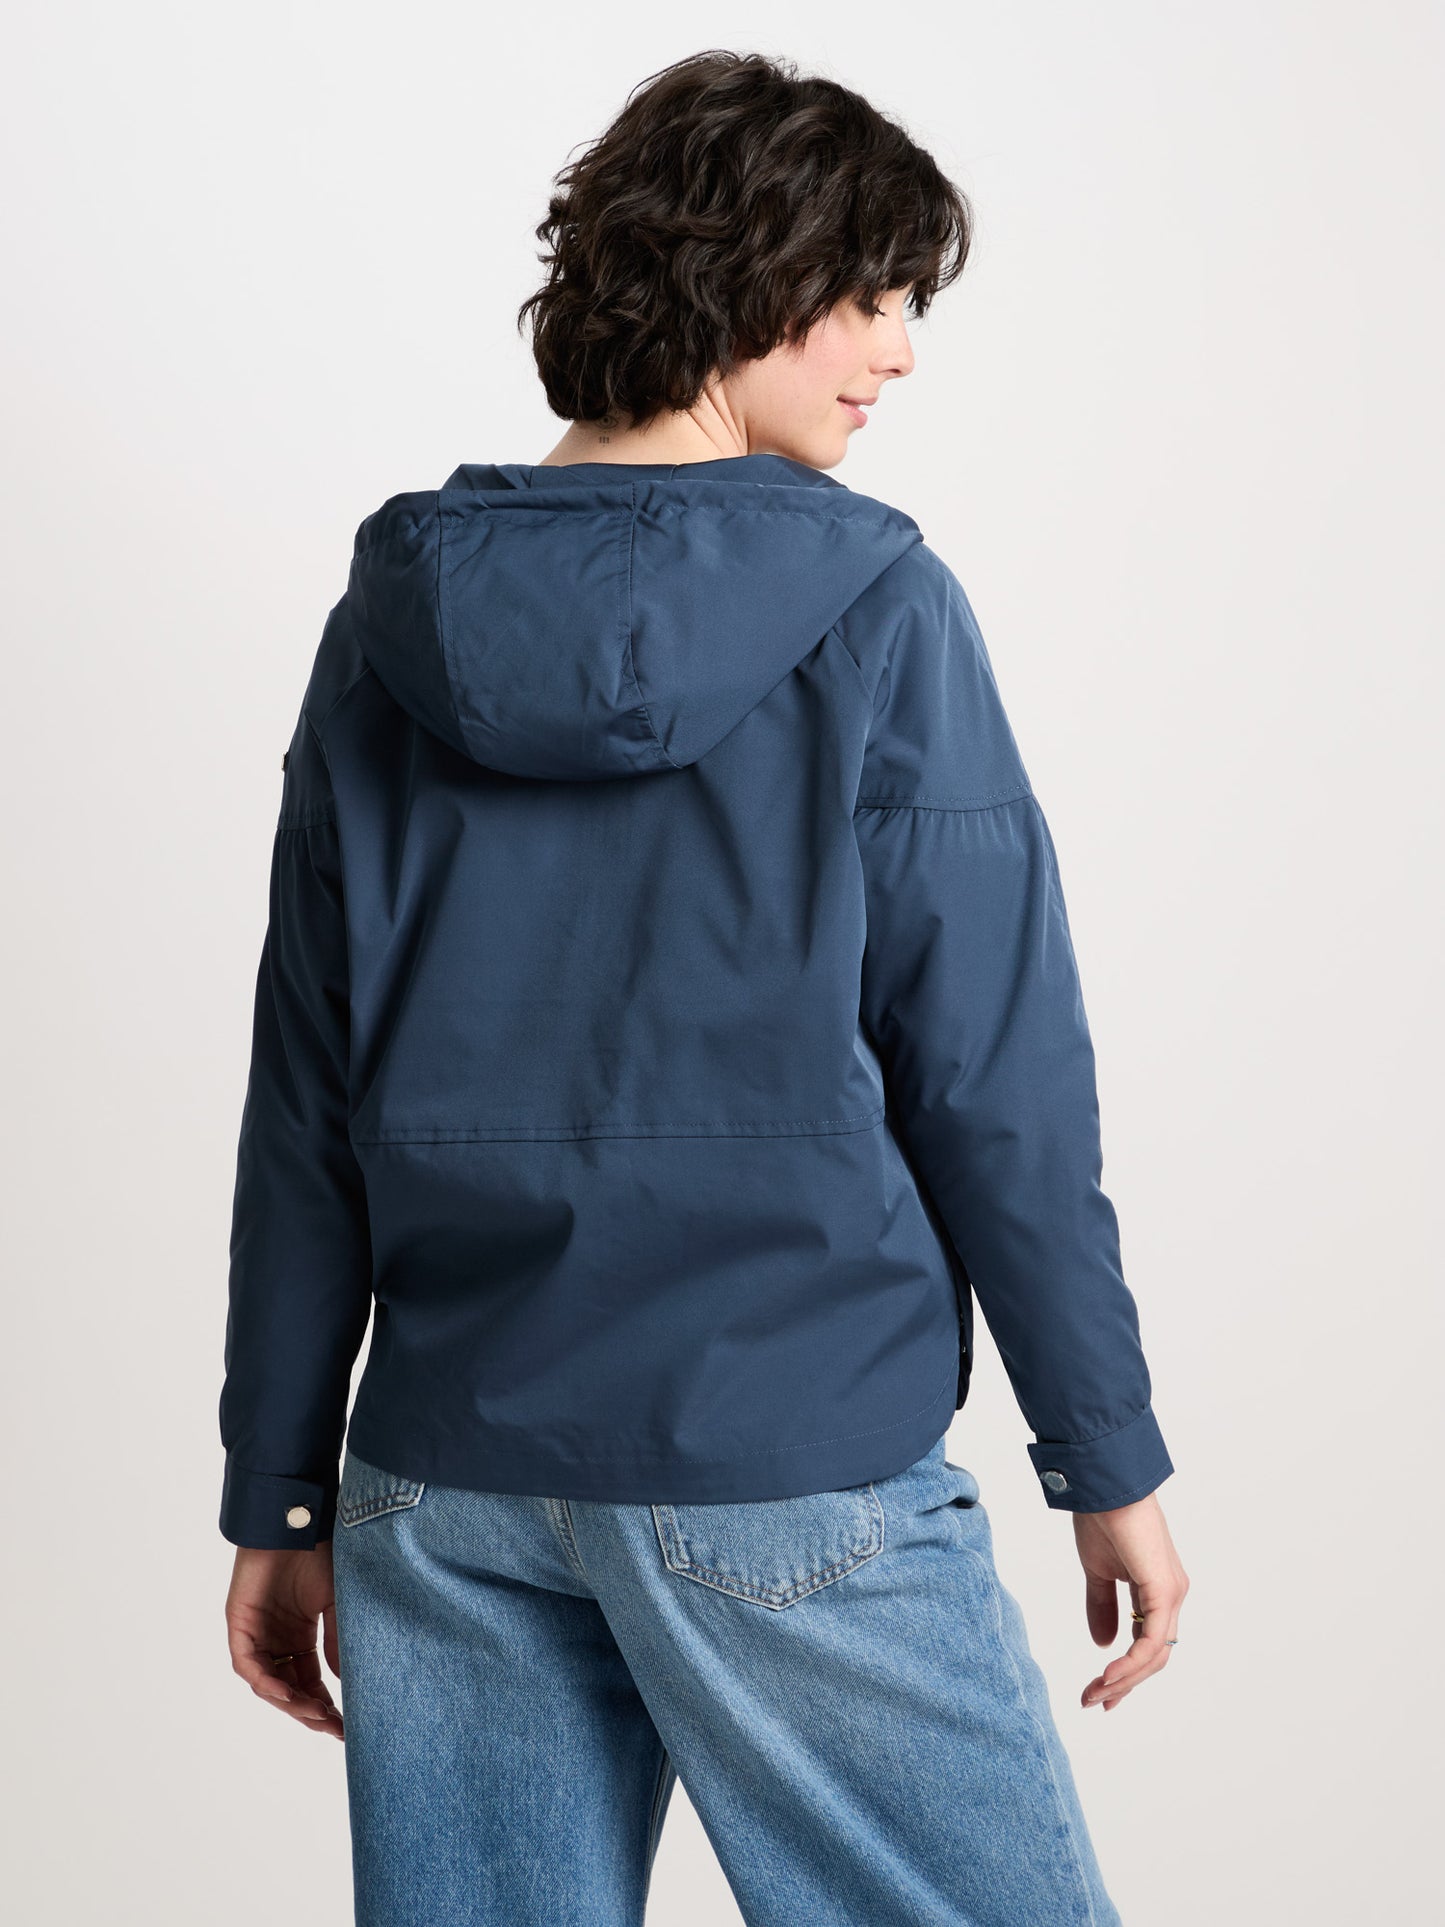 Ladies regular jacket with hood, zip and snap fasteners navy blue